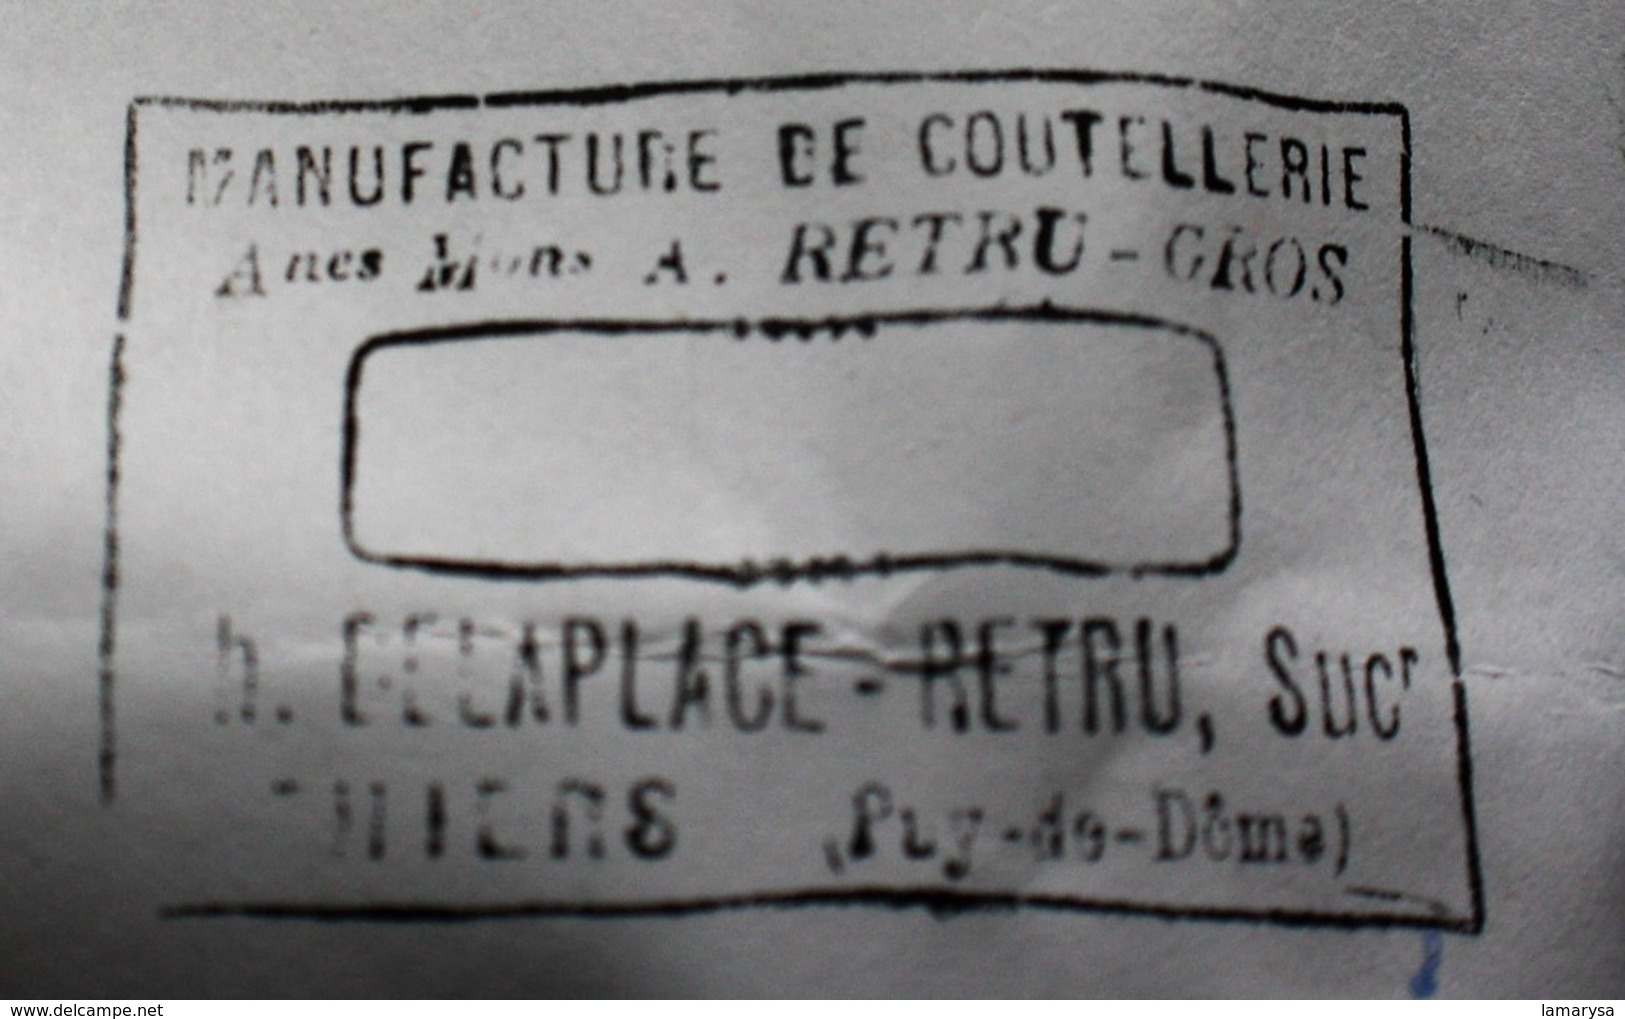 TAMPON Adresse MANUFACTURE de COUTELLERIE CH. DELAPLACE-RETRU COUTEAUX THIERS Puy Dôme)63 CACHET-☛Années(±)1900-Couteau